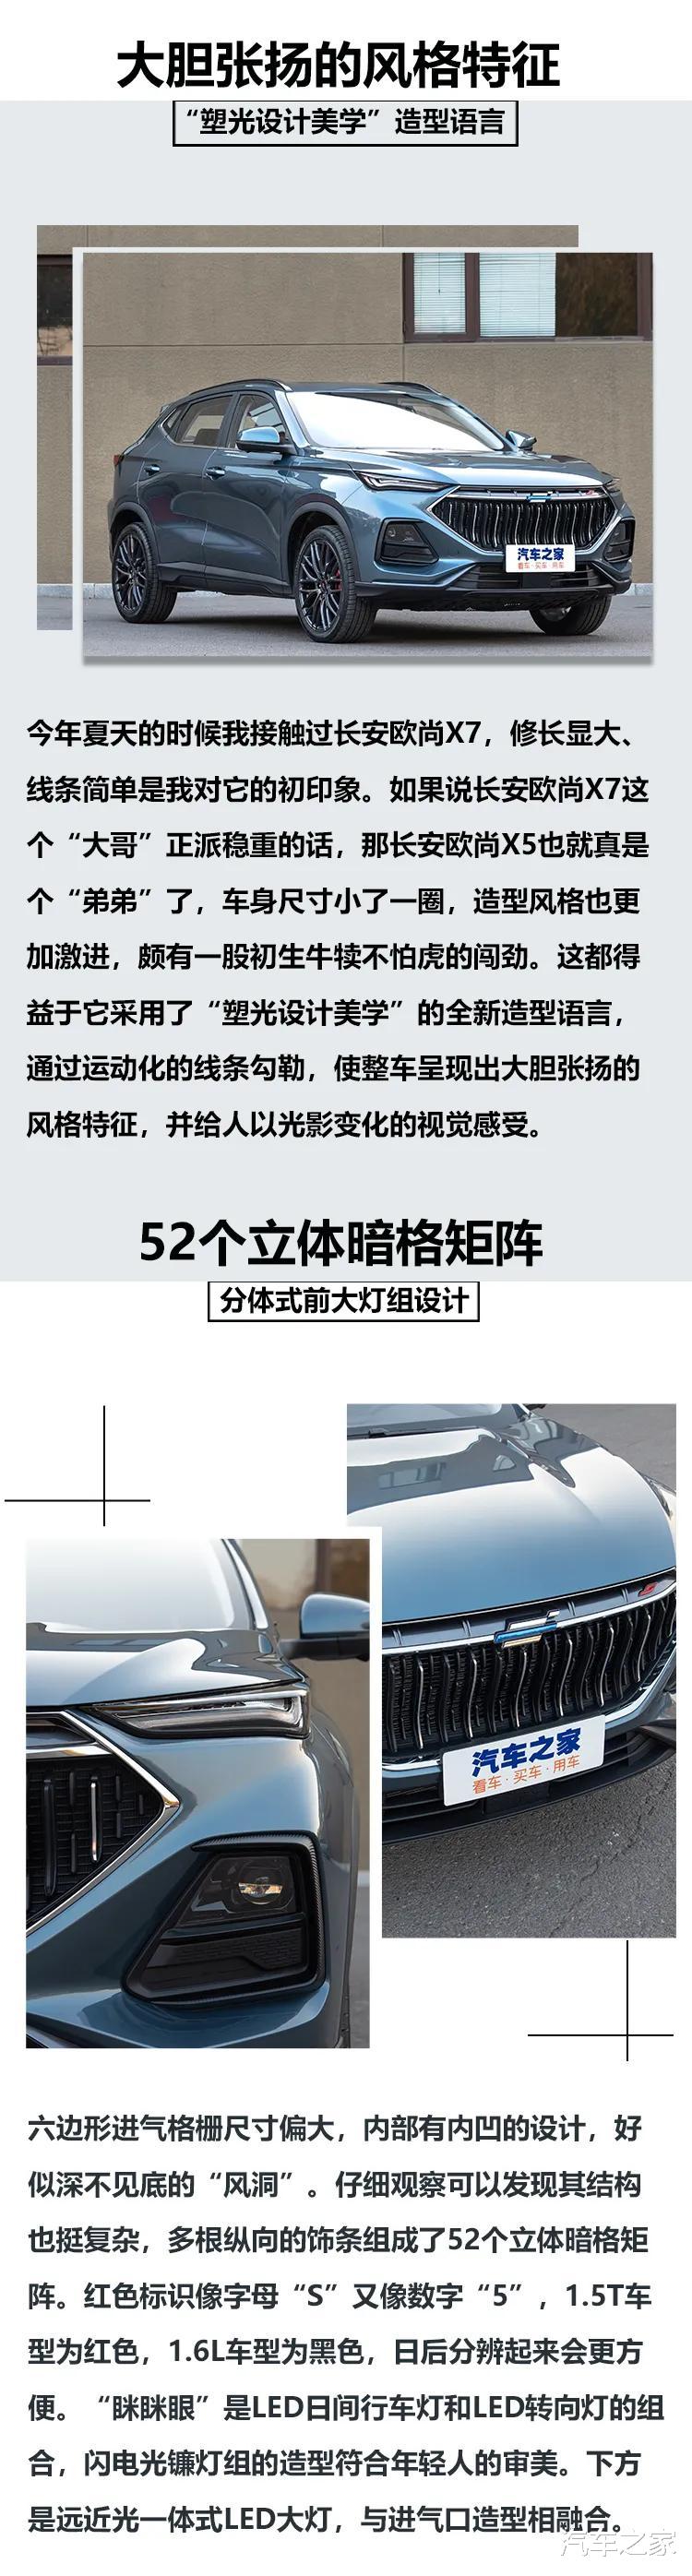 9萬多就配賽道模式，這臺中國品牌SUV竟然自帶銷魂聲浪-圖2